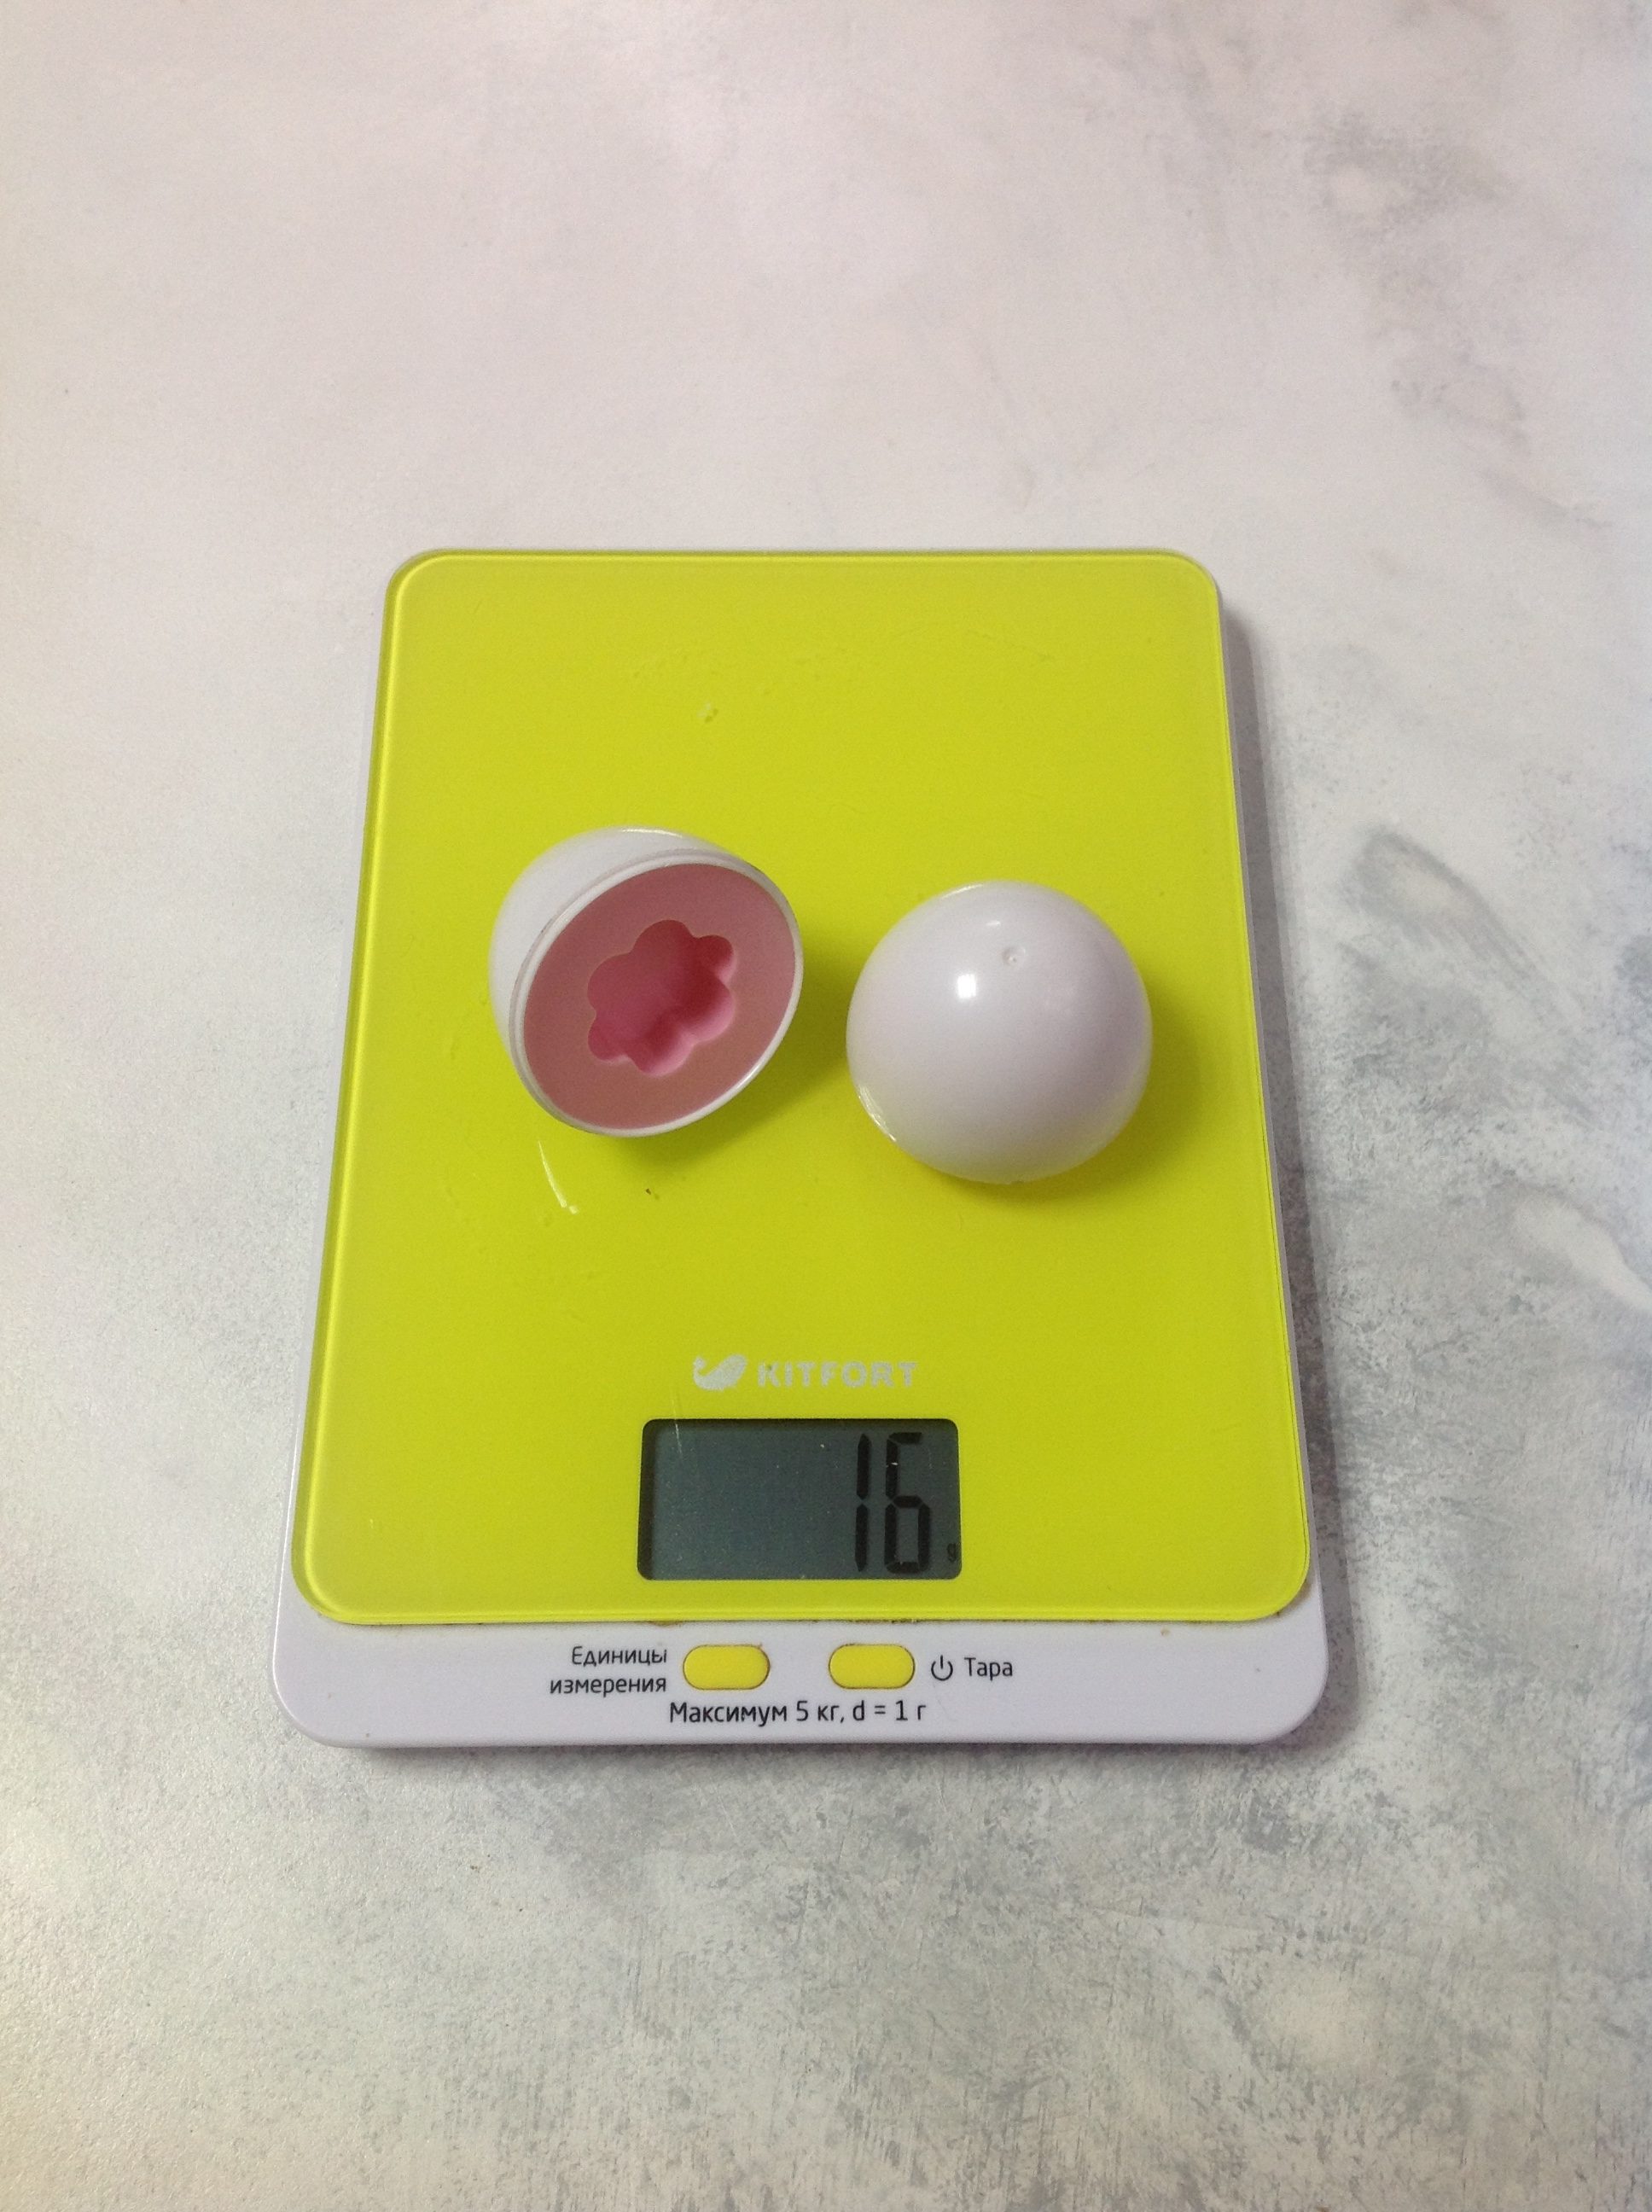 Plastik bir oyuncak yumurtanın ağırlığı ne kadardır?